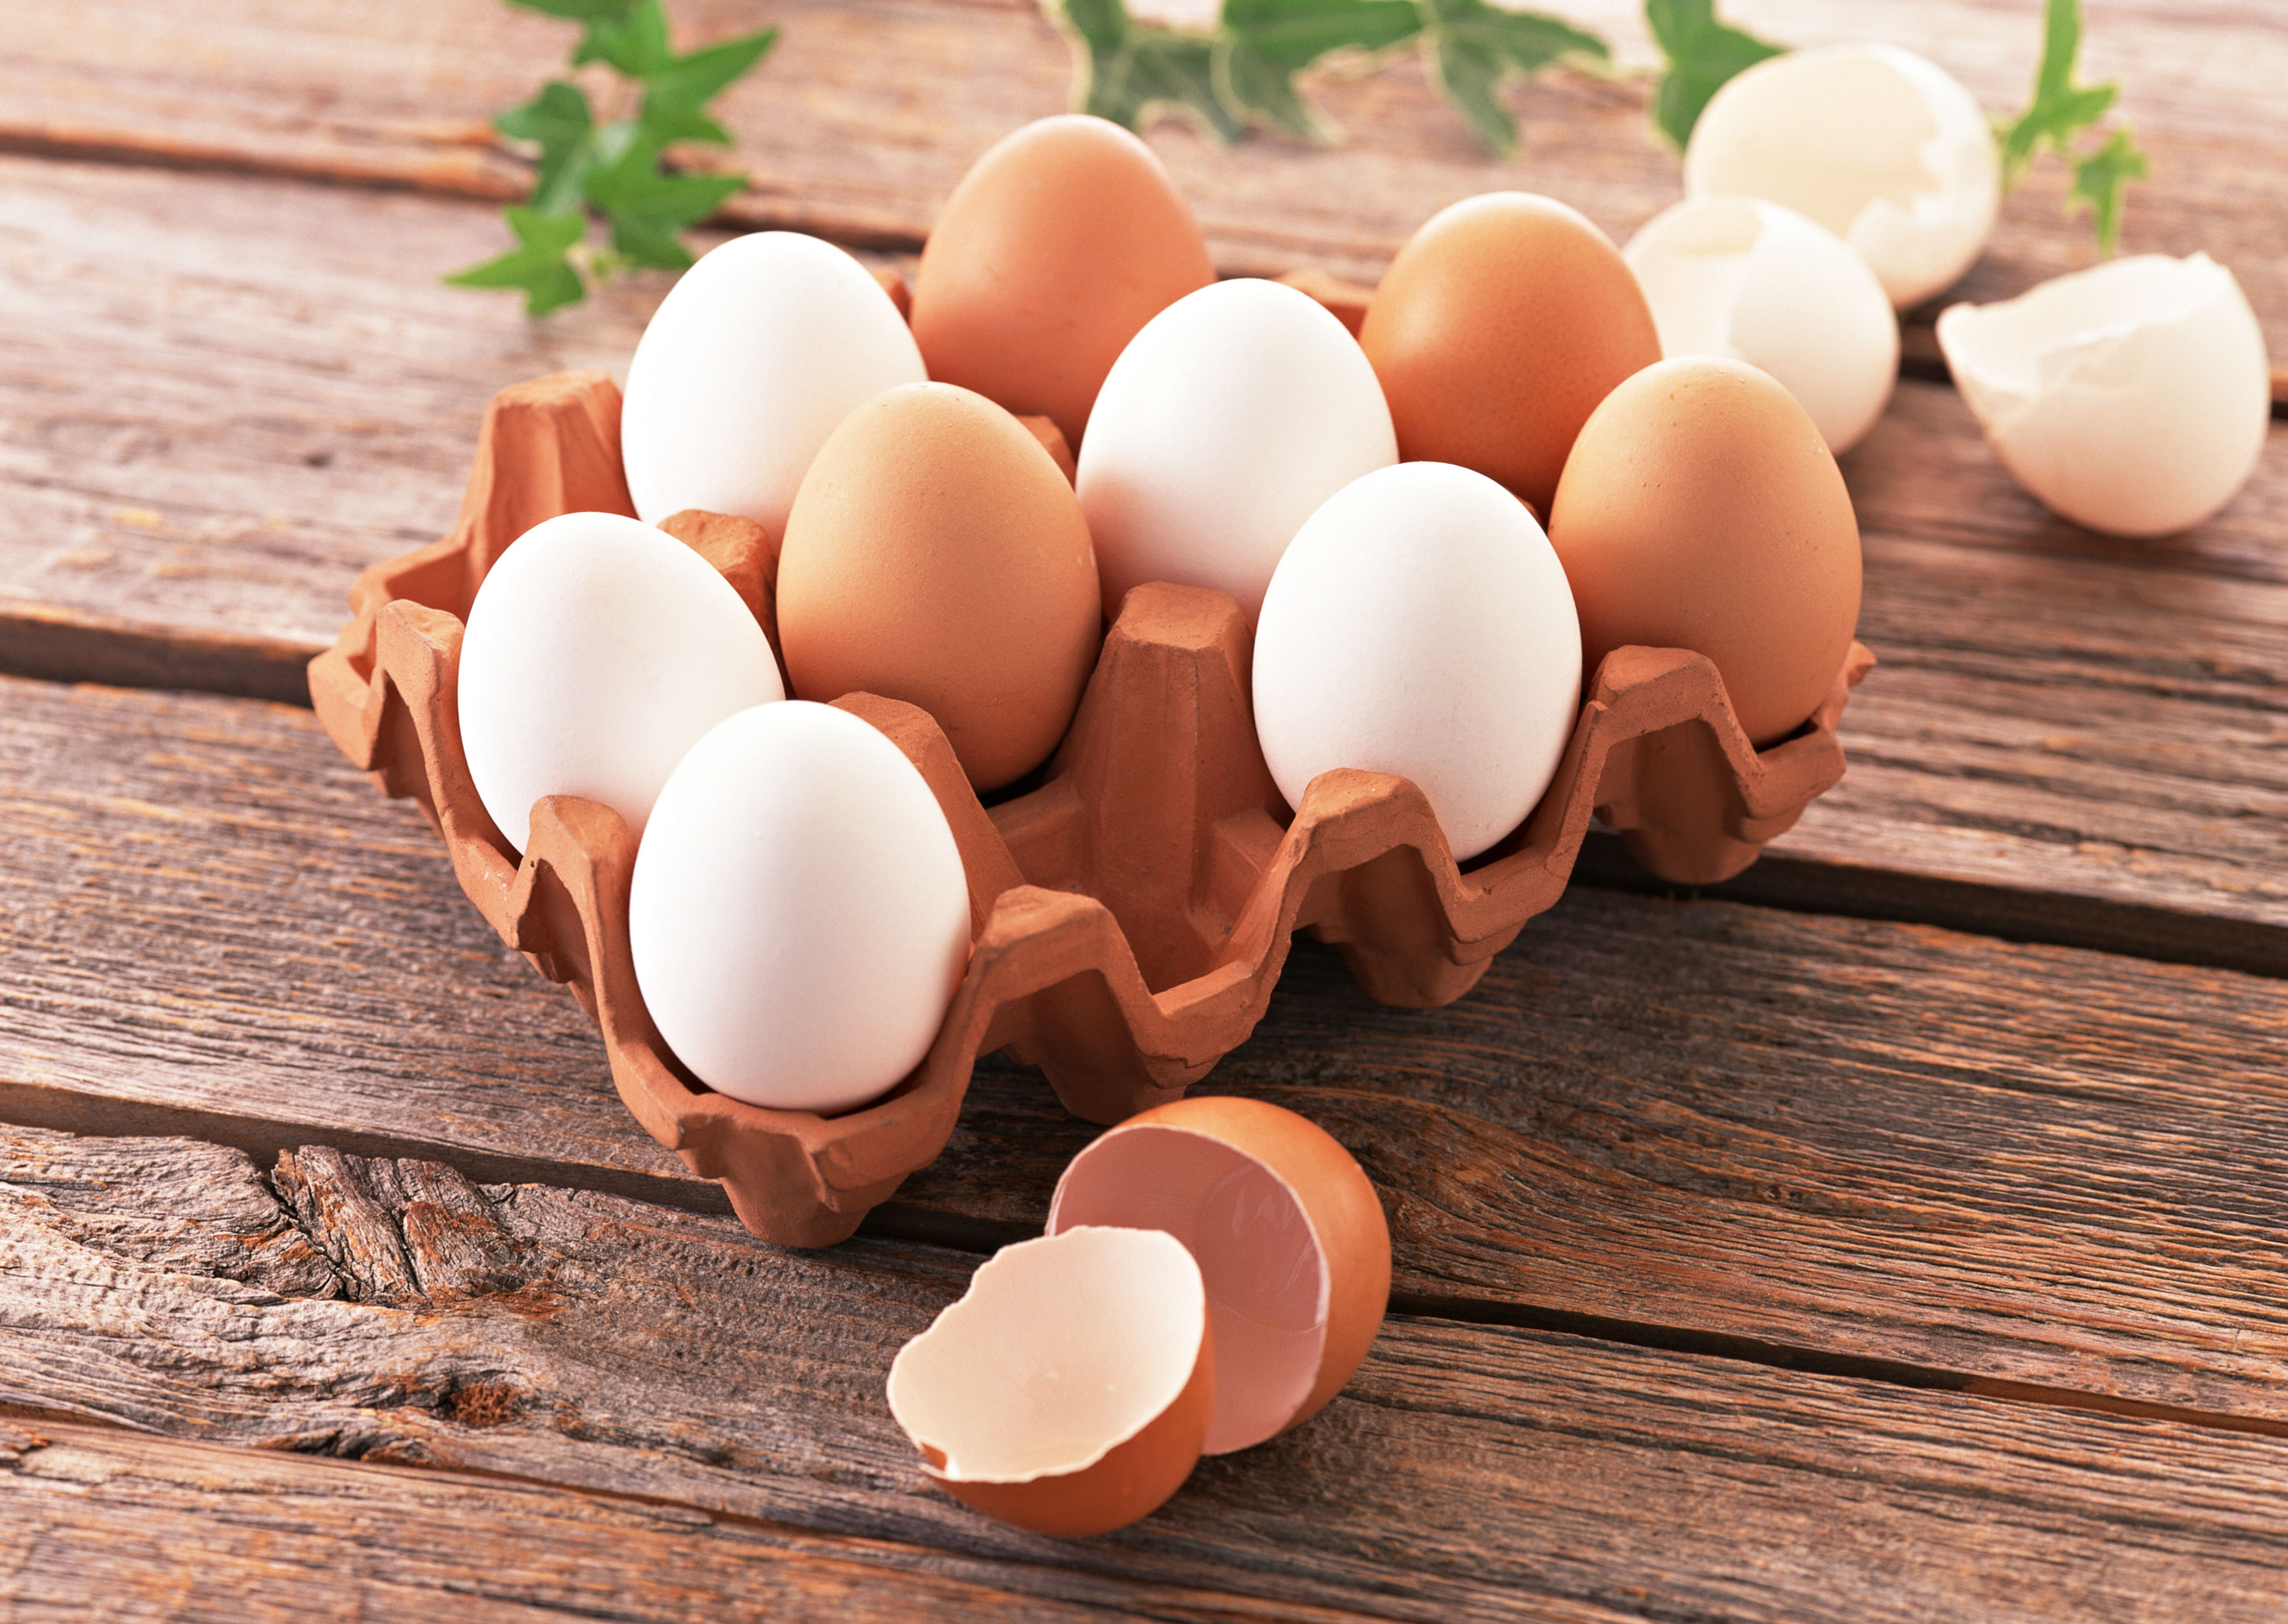 منتجات البيض السائلة المُبرّدة